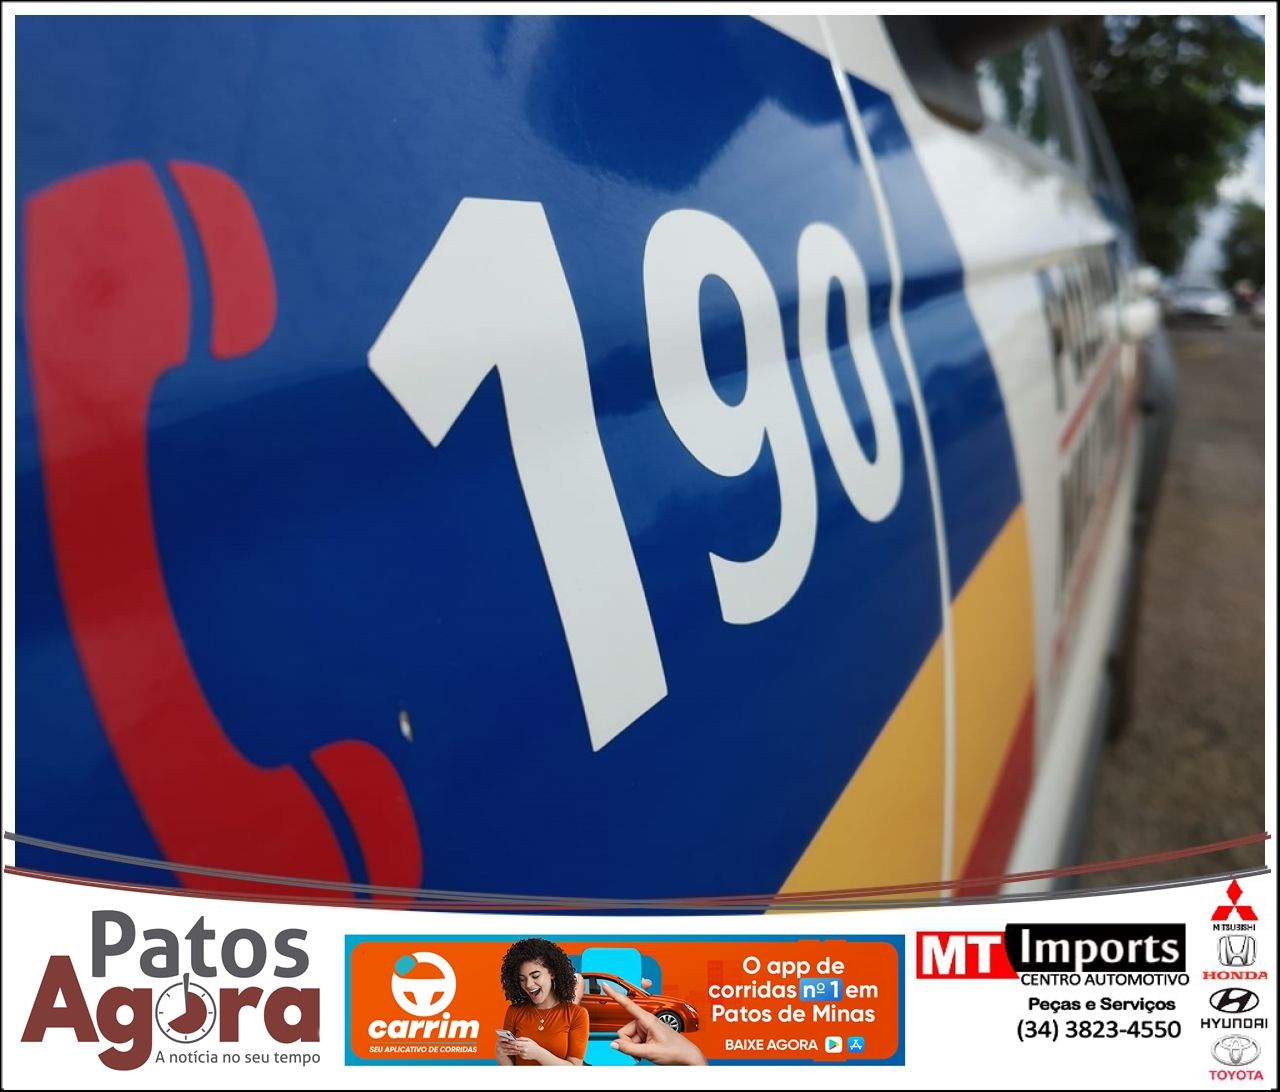 Adolescente grava importunação sexual sofrida em ônibus do transporte coletivo em Patos de Minas